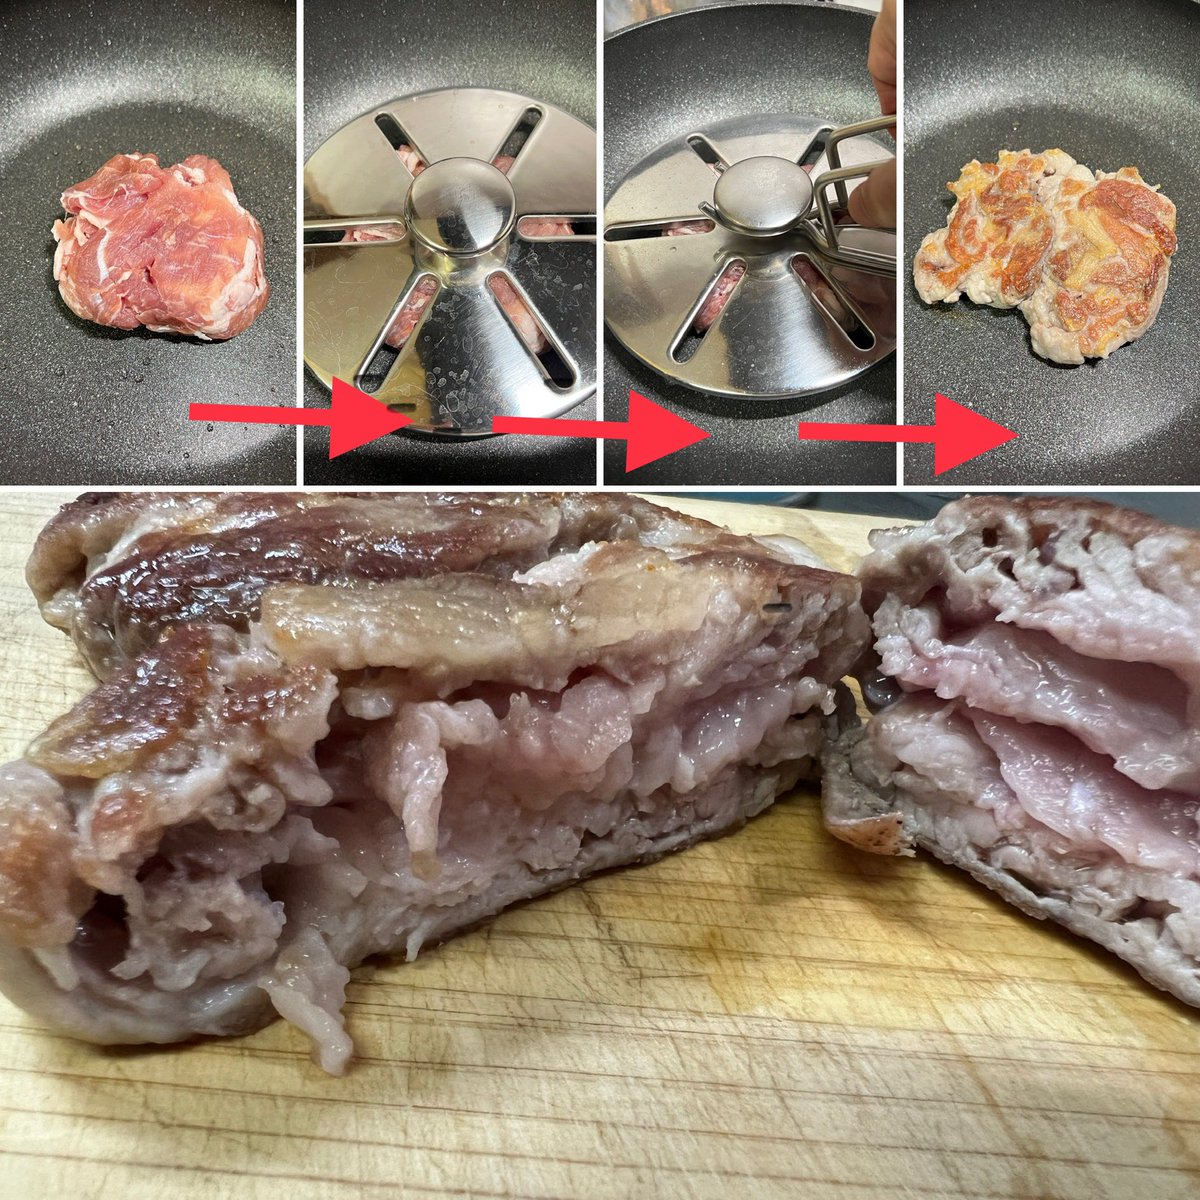 適当に重ねた肉にミートプレスを置いて焼いただけ。 重なり具合と脂の抜け方が、普通に焼いただけの肉よりずっと美味しくなりました。